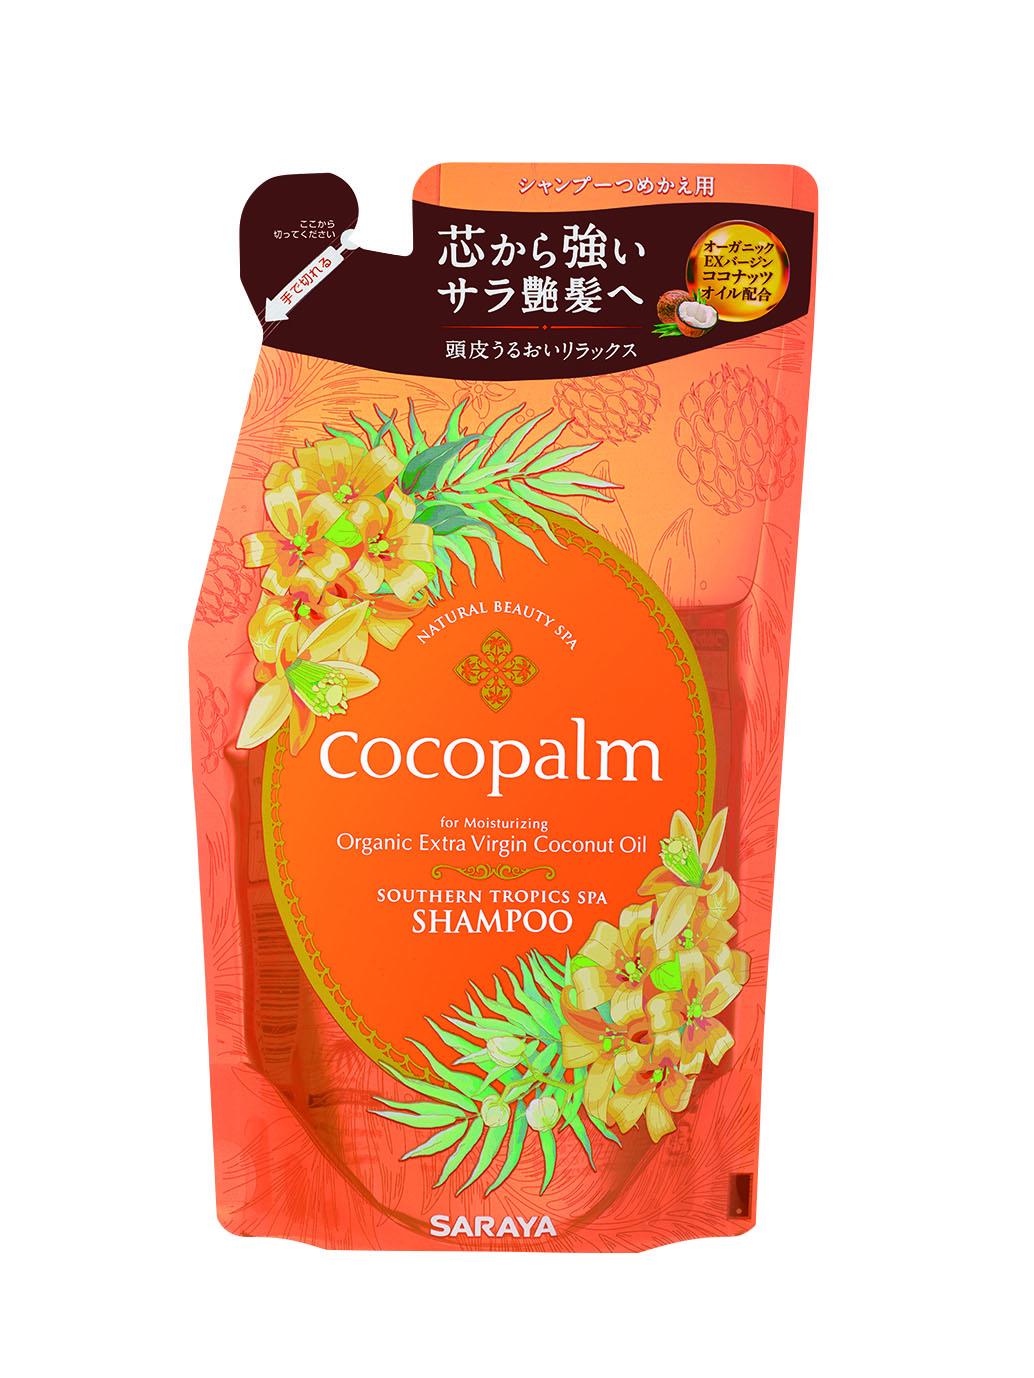 Шампунь Southern Tropics Spa для оздоровлення волосся та шкіри голови Cocopalm наповнювач 380 мл (4973512261404)